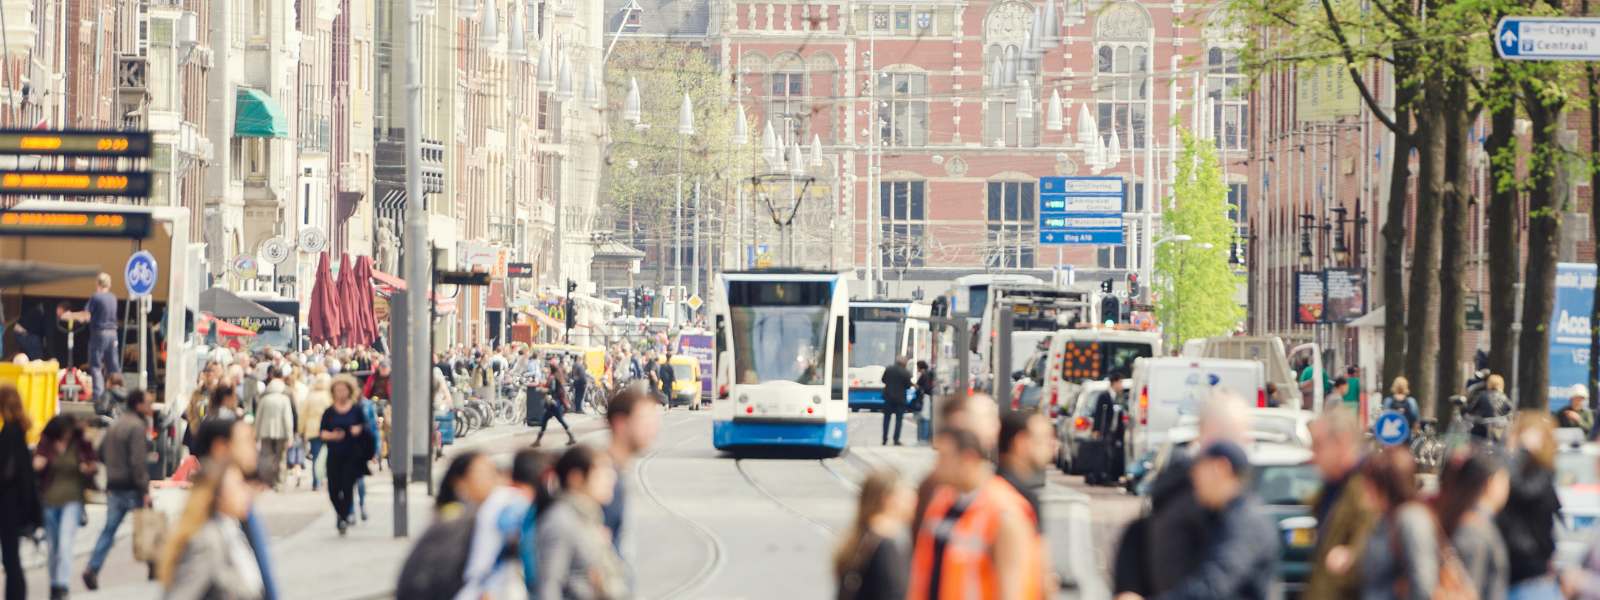 Amsterdam Pedestrians